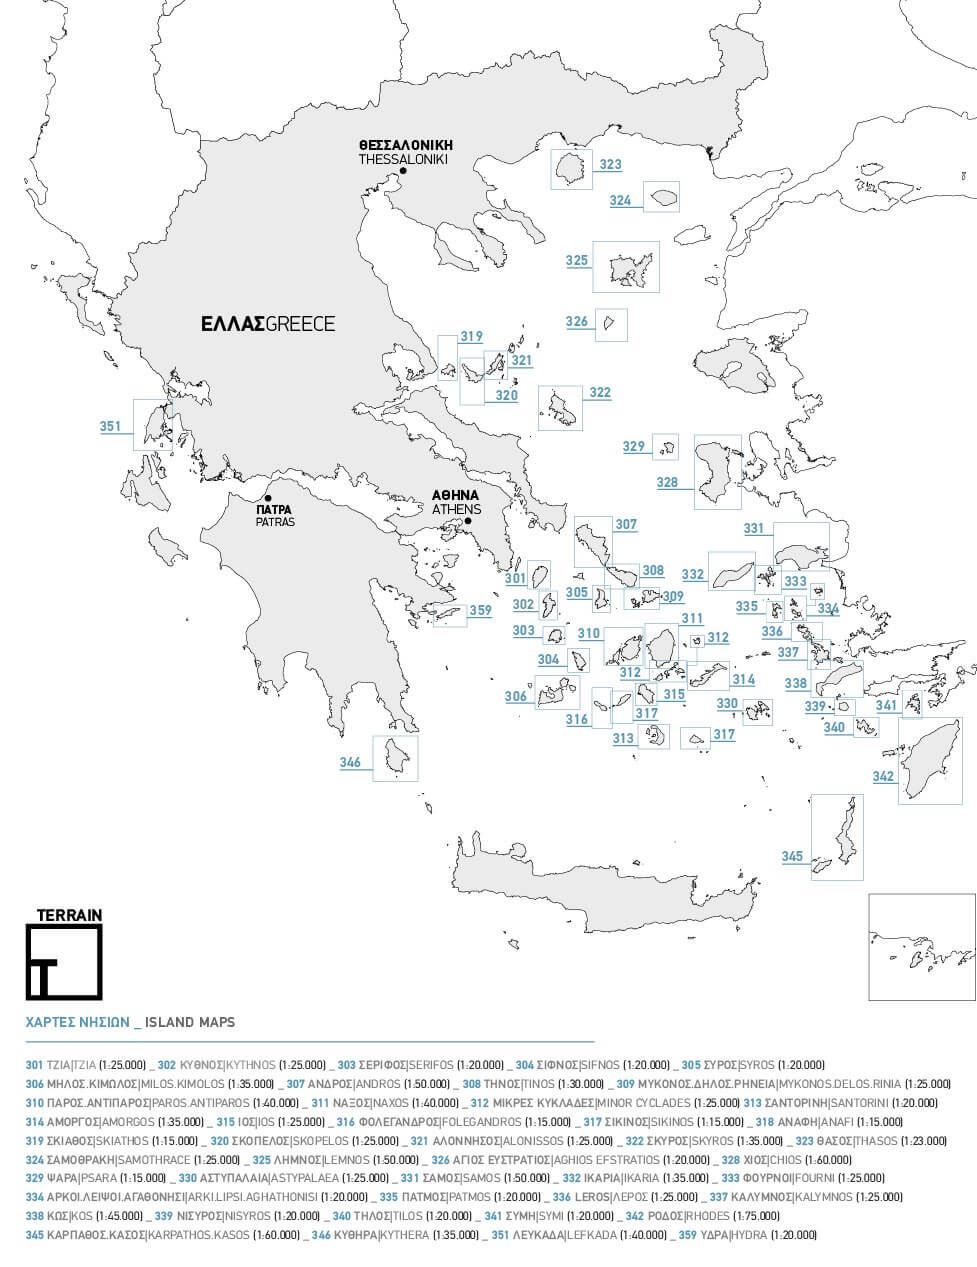 Karteneinteilung / Blattschnitt / Kartenübersicht für die Terrain Maps Wanderkarten Griechenland